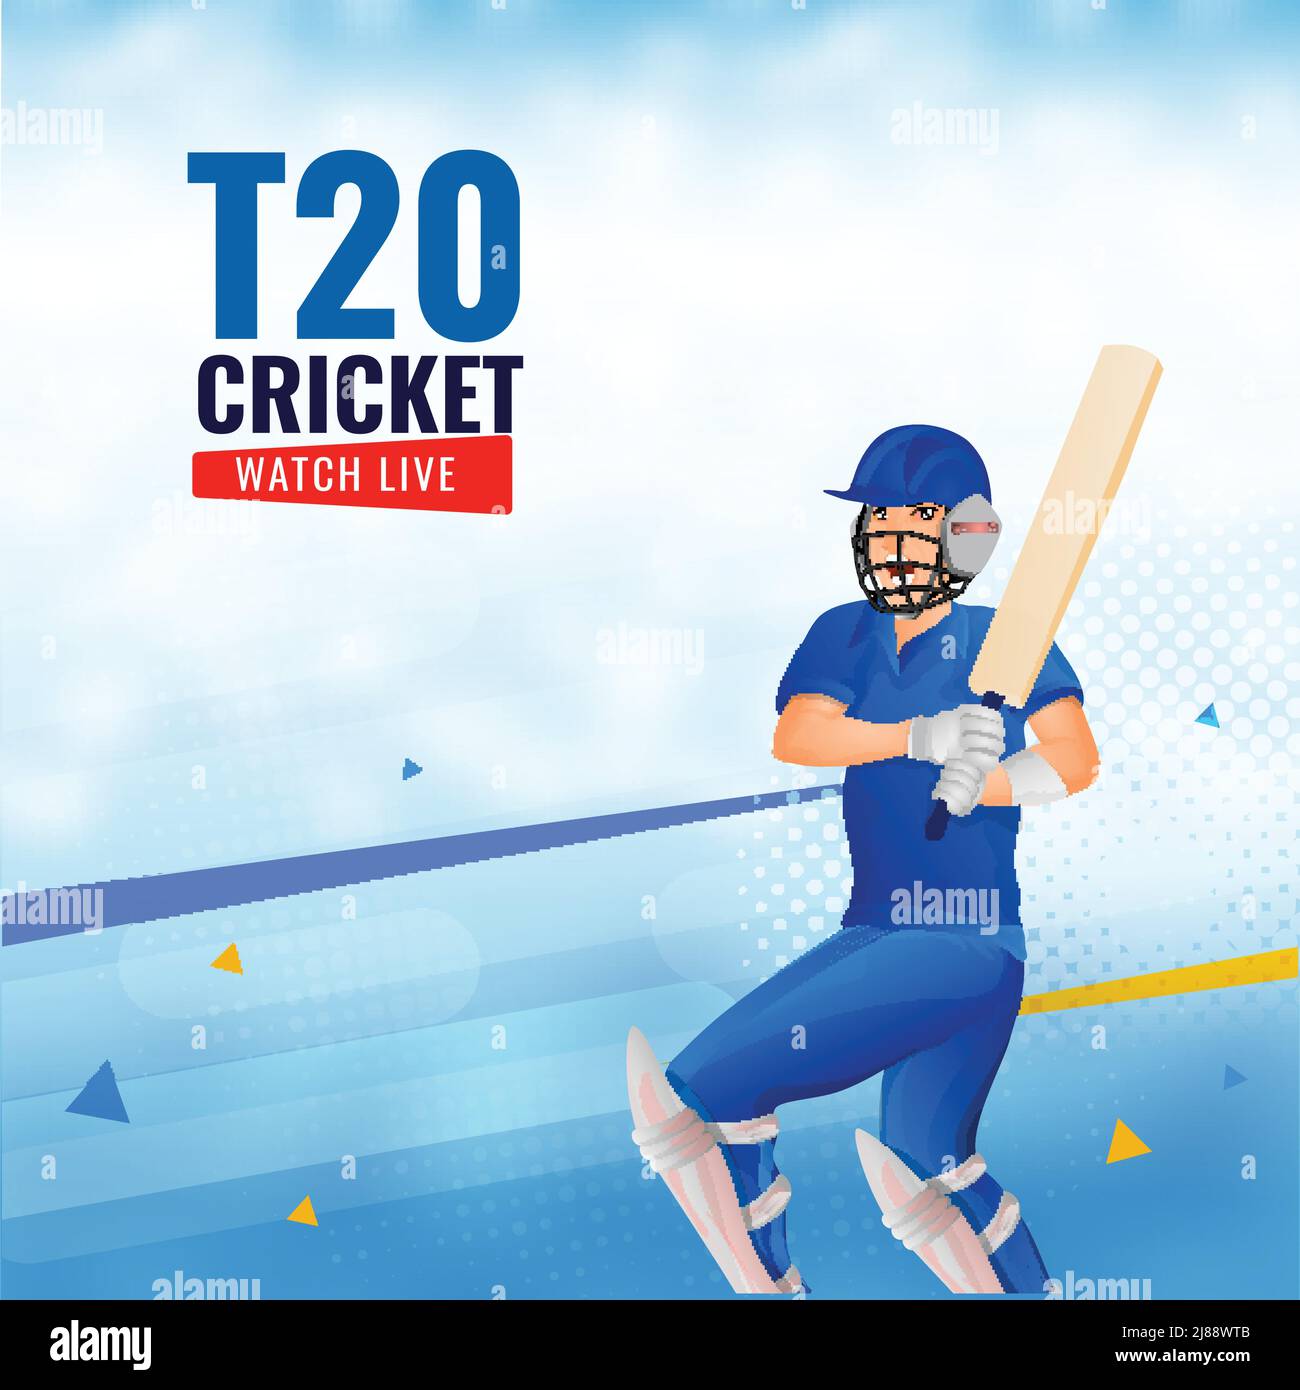 T20 Cricket Watch Live Poster Design mit Batsman Player in der Pose auf blauem und weißem Hintergrund spielen. Stock Vektor